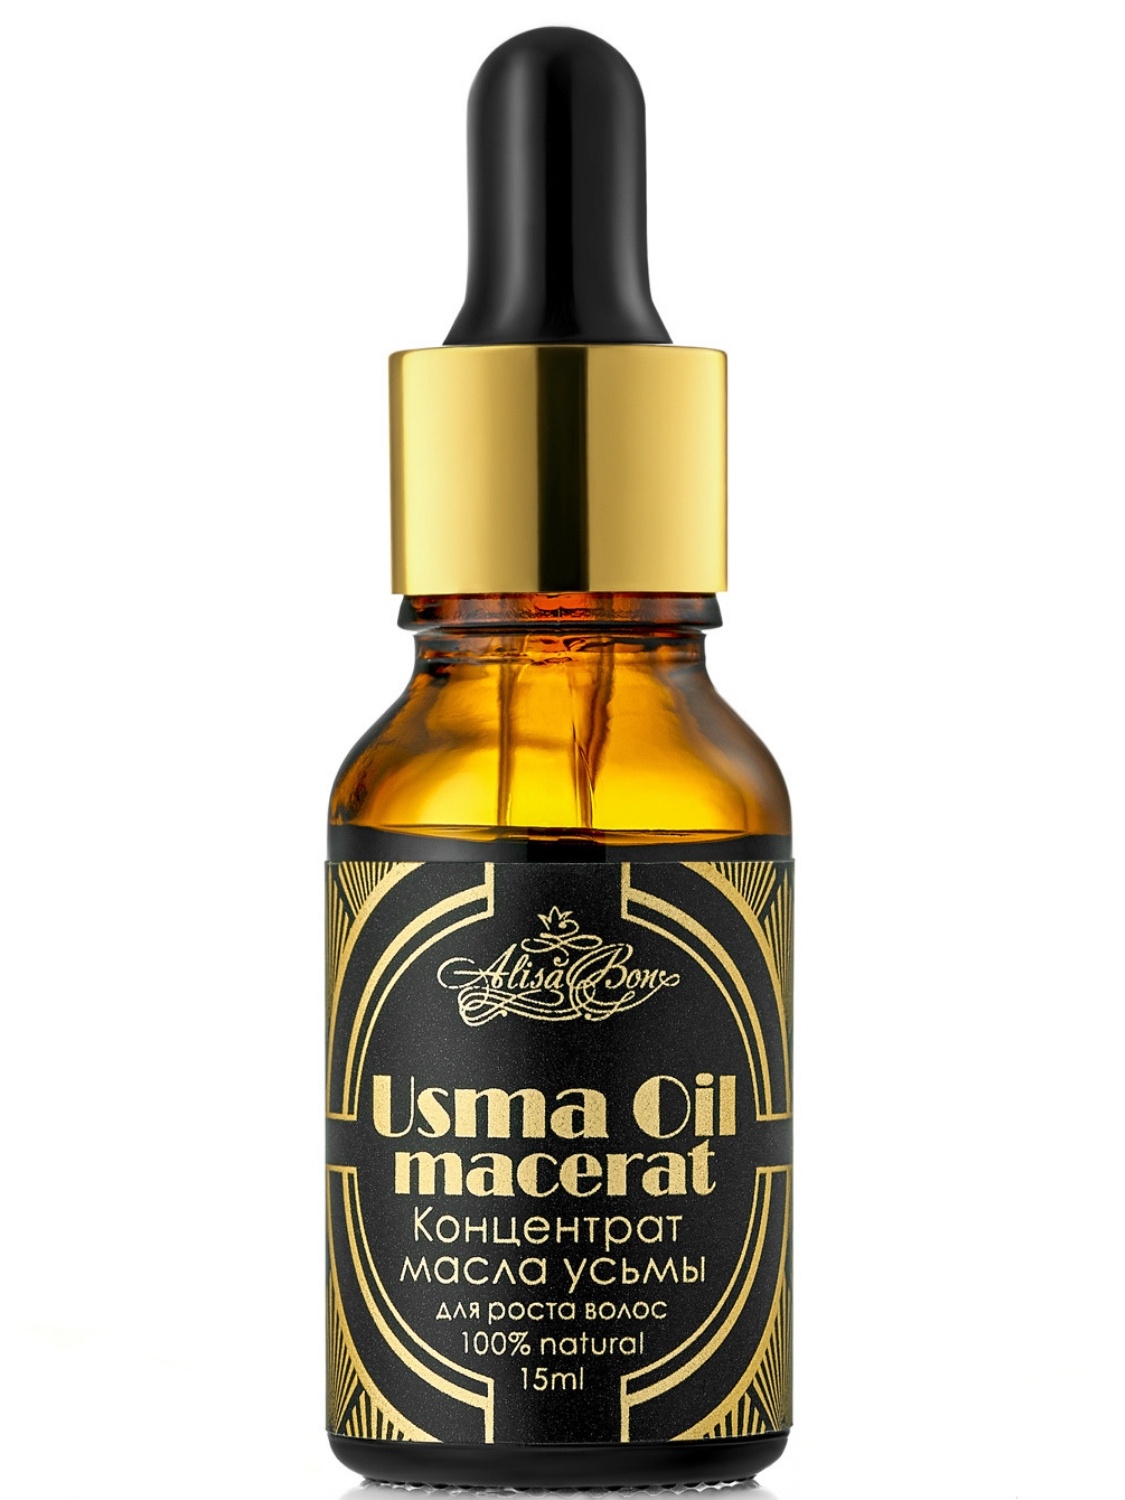 фото Масло для волос Alisa Bon Концентрат масла усьмы для роста волос и бровей "Usma Oil macerat"